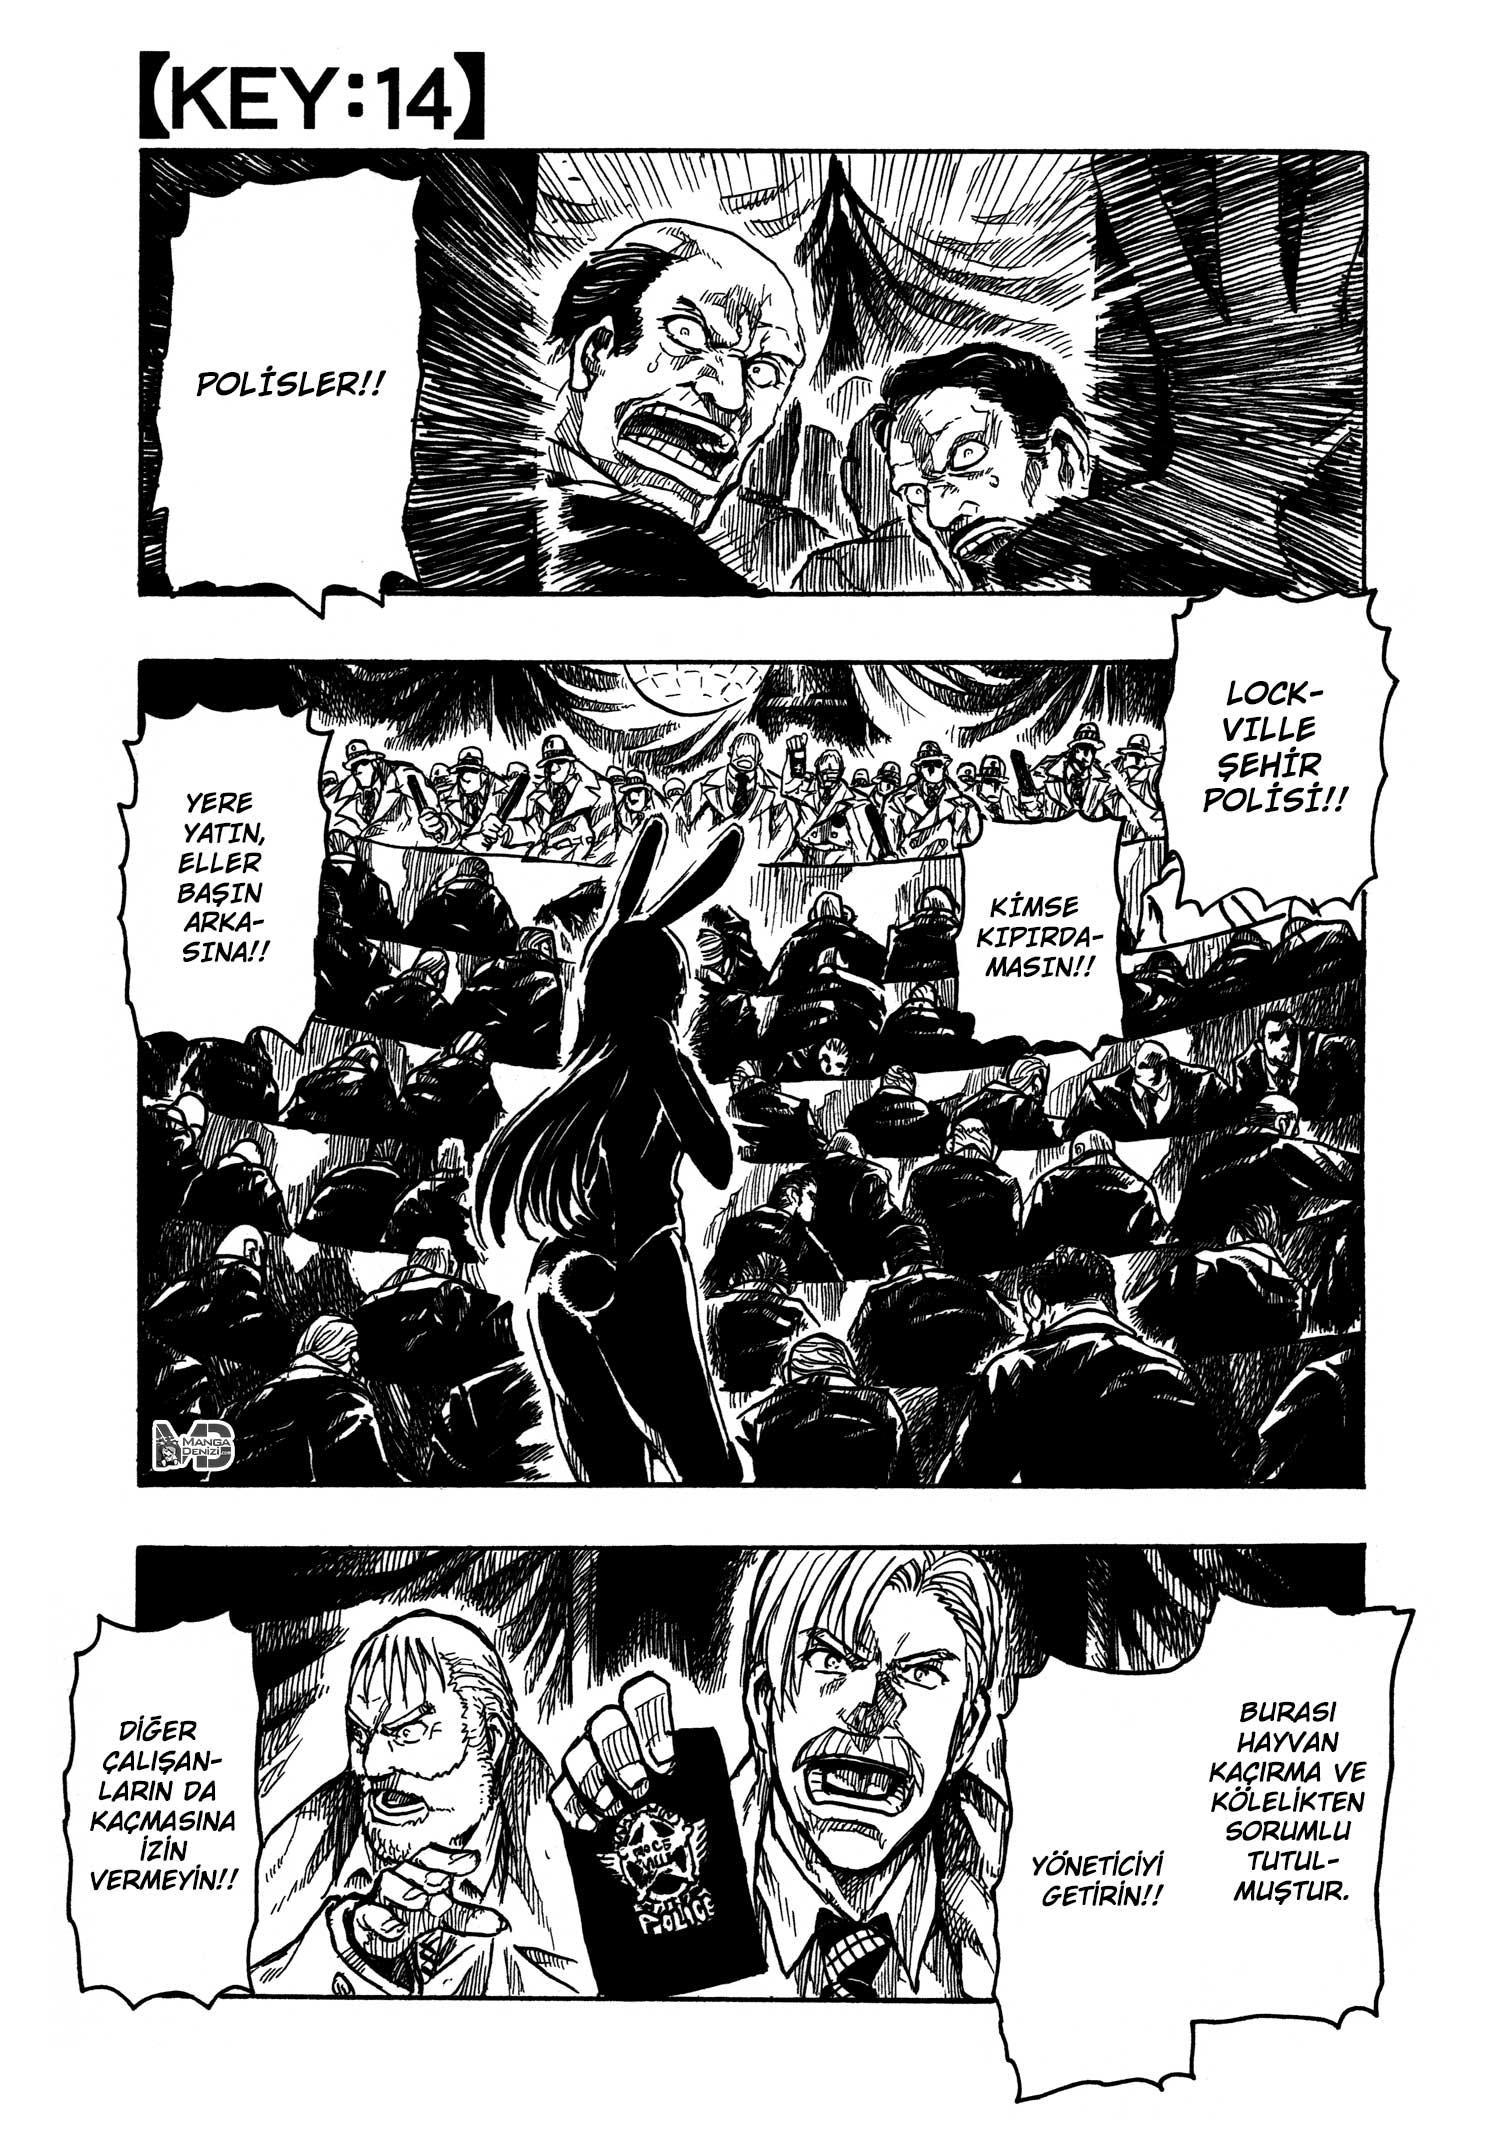 Keyman: The Hand of Judgement mangasının 14 bölümünün 2. sayfasını okuyorsunuz.